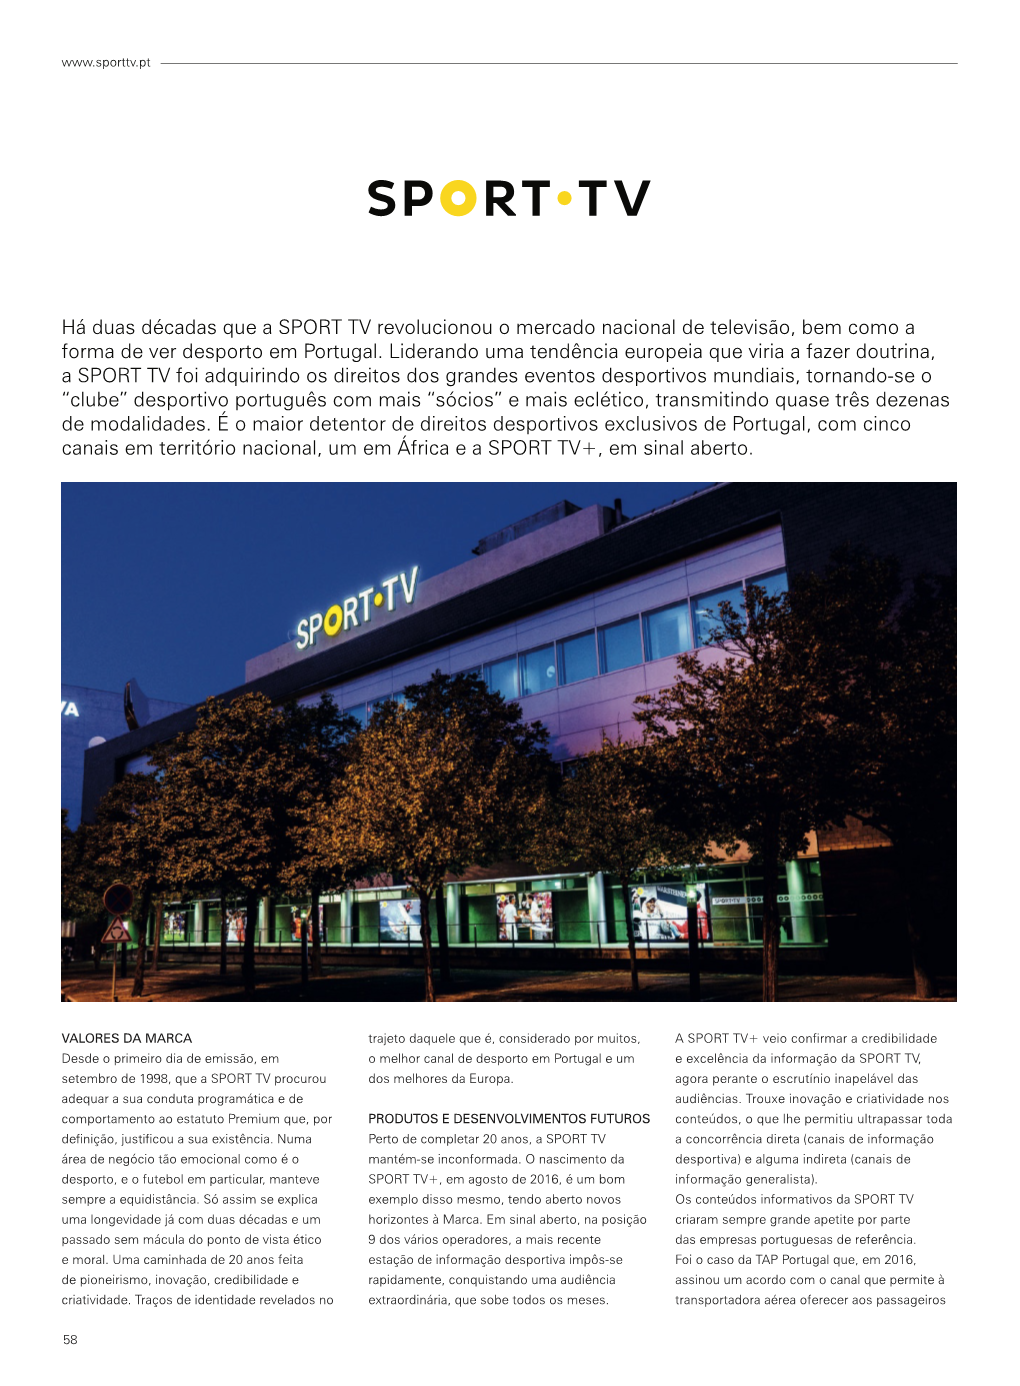 Há Duas Décadas Que a SPORT TV Revolucionou O Mercado Nacional De Televisão, Bem Como a Forma De Ver Desporto Em Portugal